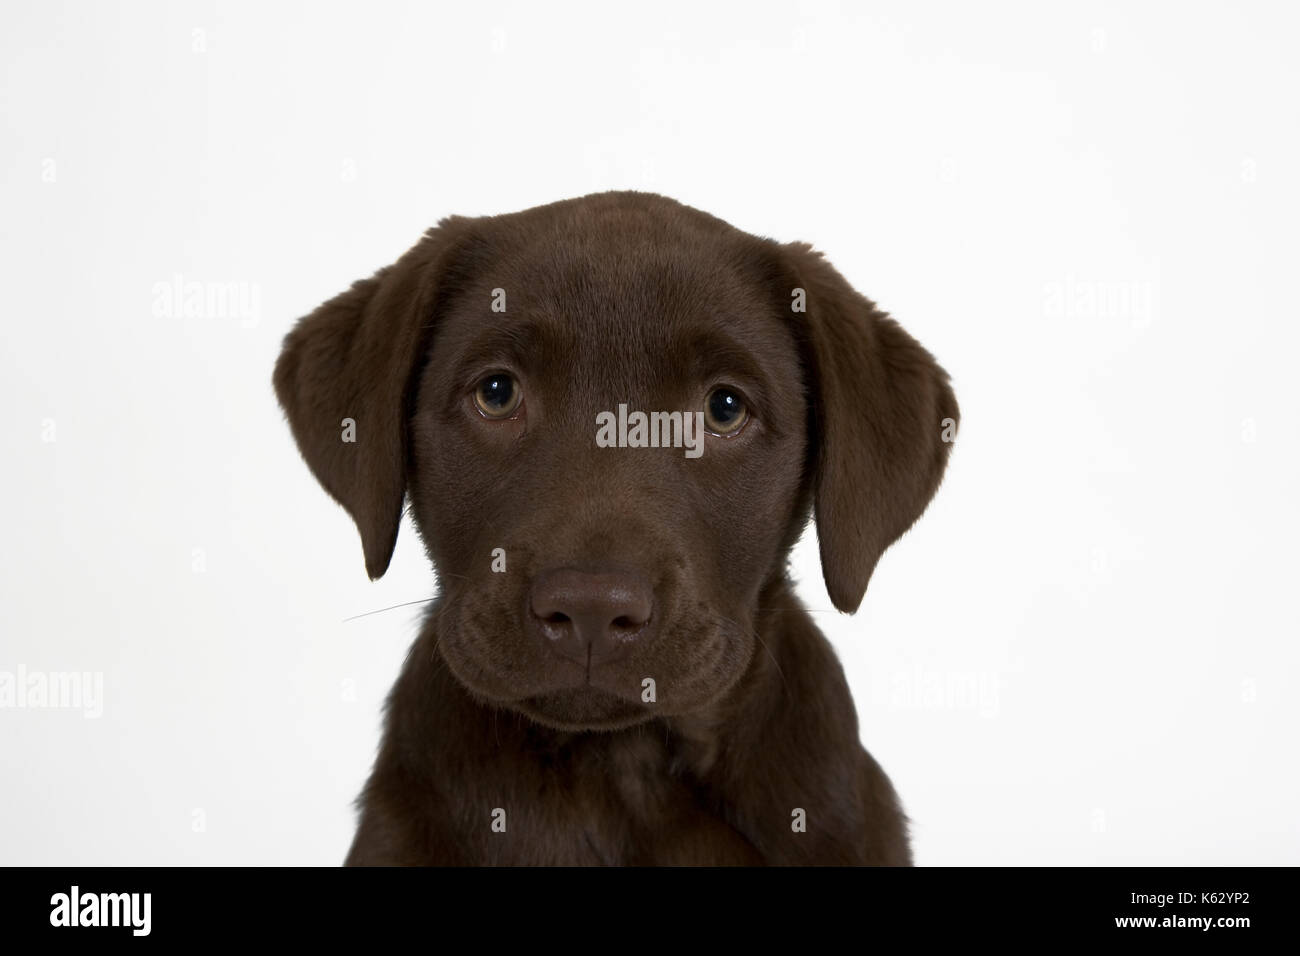 brown labrador puppy Stock Photo